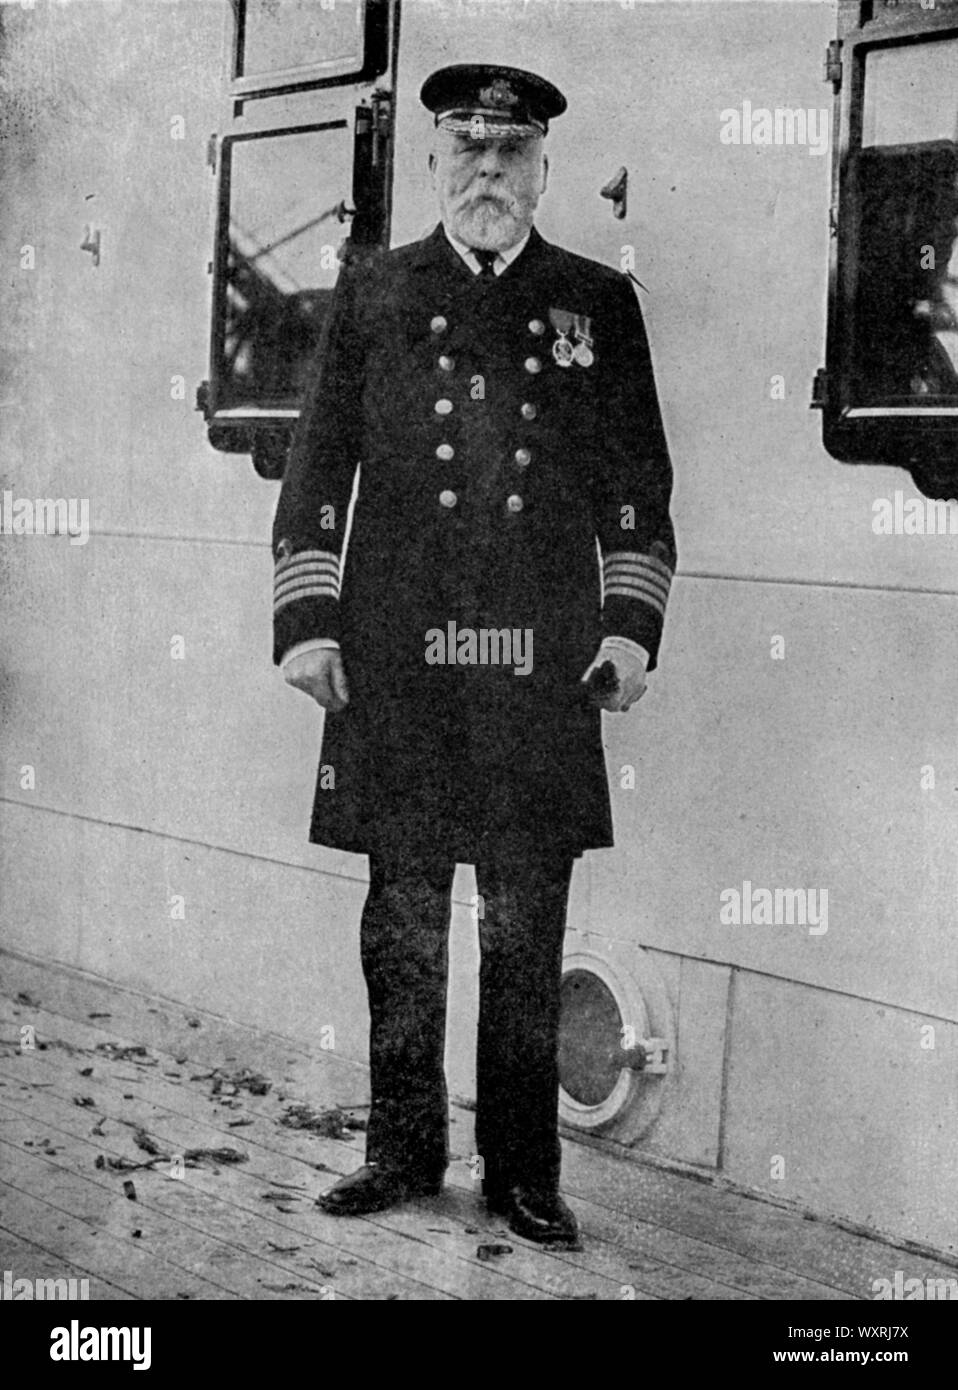 Kapitän E J Smith des Schiffes 'Titanic', 1911. Edward John Smith (1850-1912) war ein britischer Marineoffizier. Er diente als Meister von mehreren Schiffen der White Star Line. Er war der Kapitän der RMS Titanic und starb, als das Schiff auf seiner Jungfernfahrt sank. Stockfoto